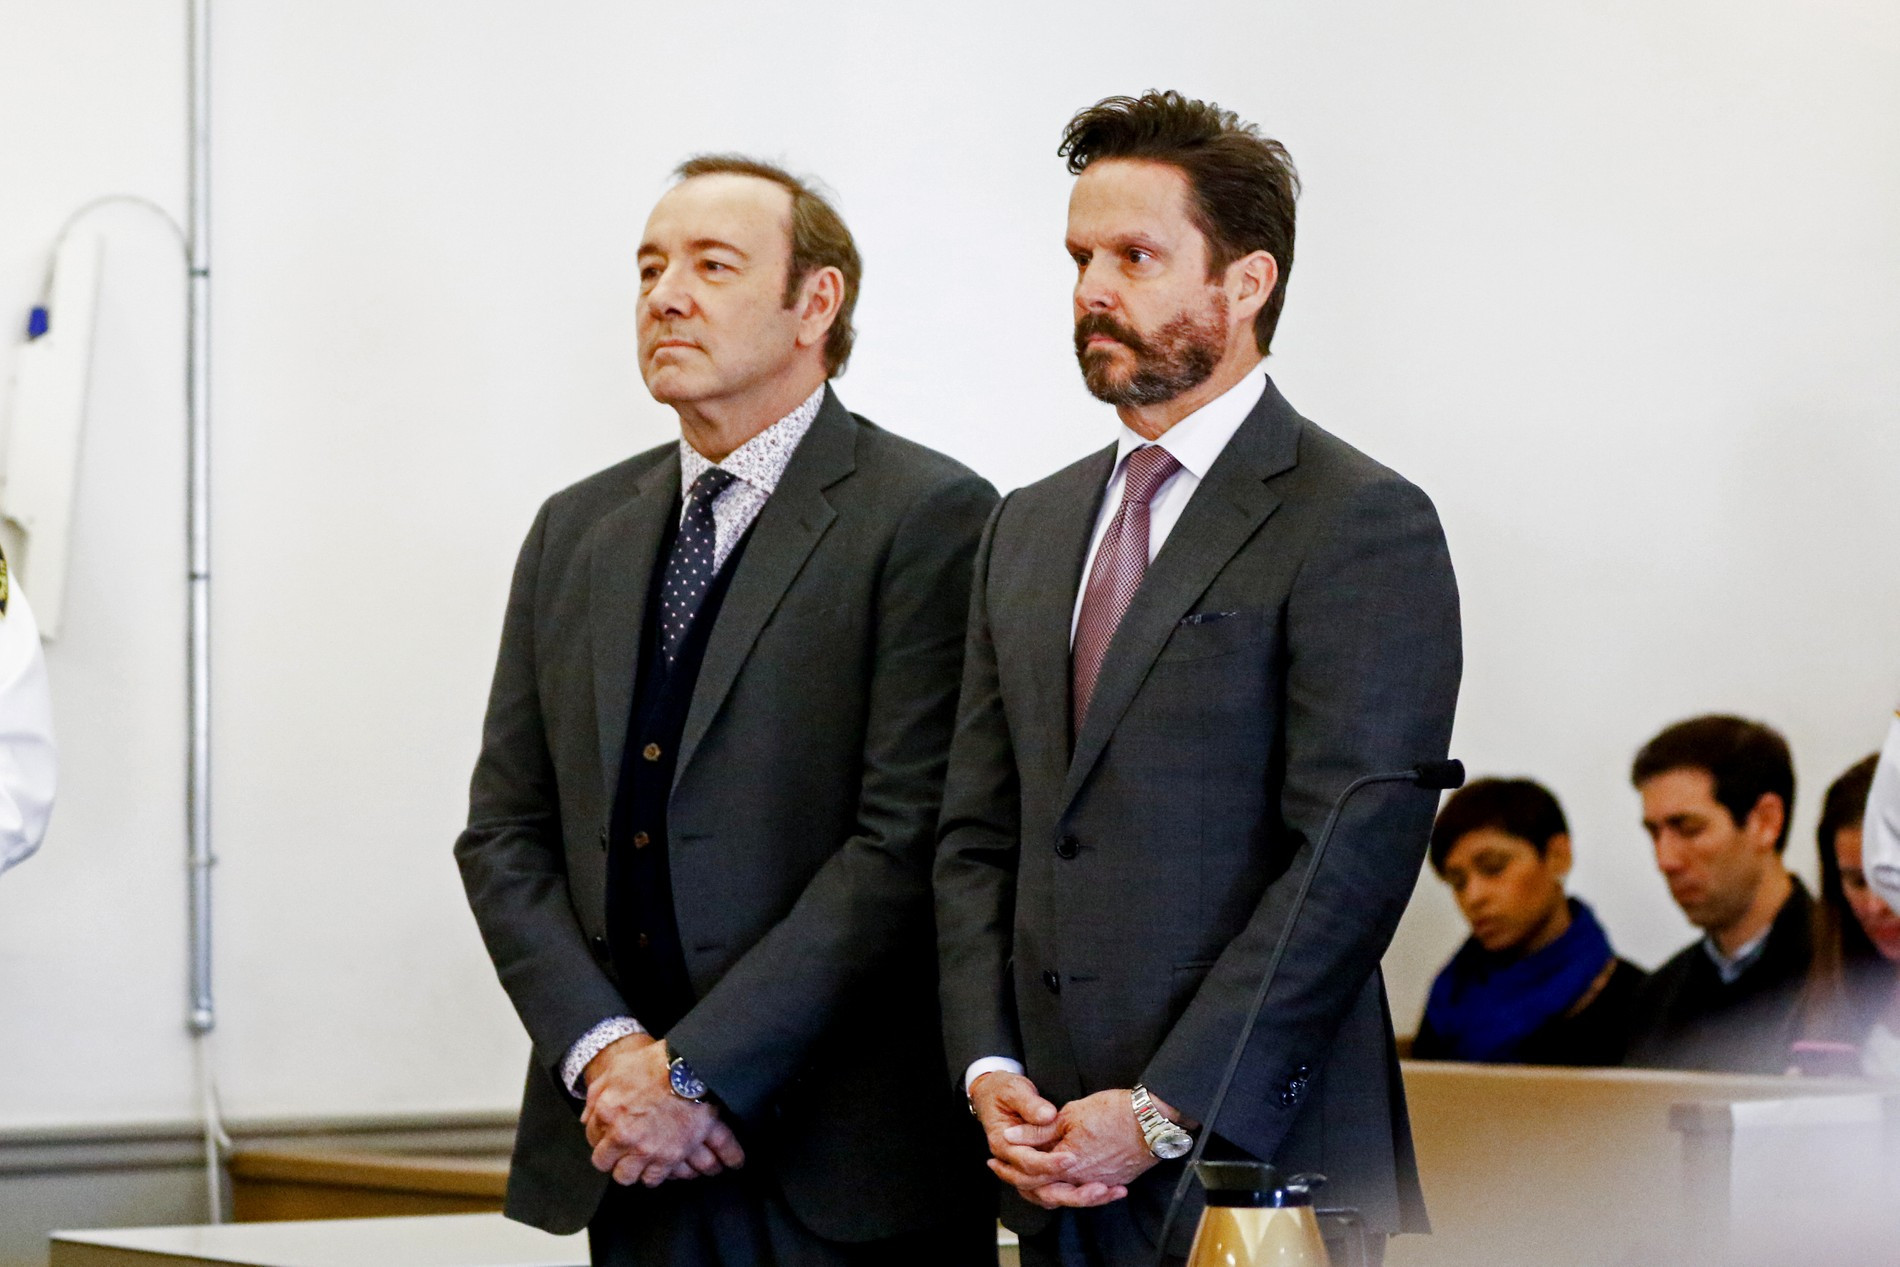 Кевин Спейси на суде по обвинению в сексуальных домогательствах. Фото: Getty Images